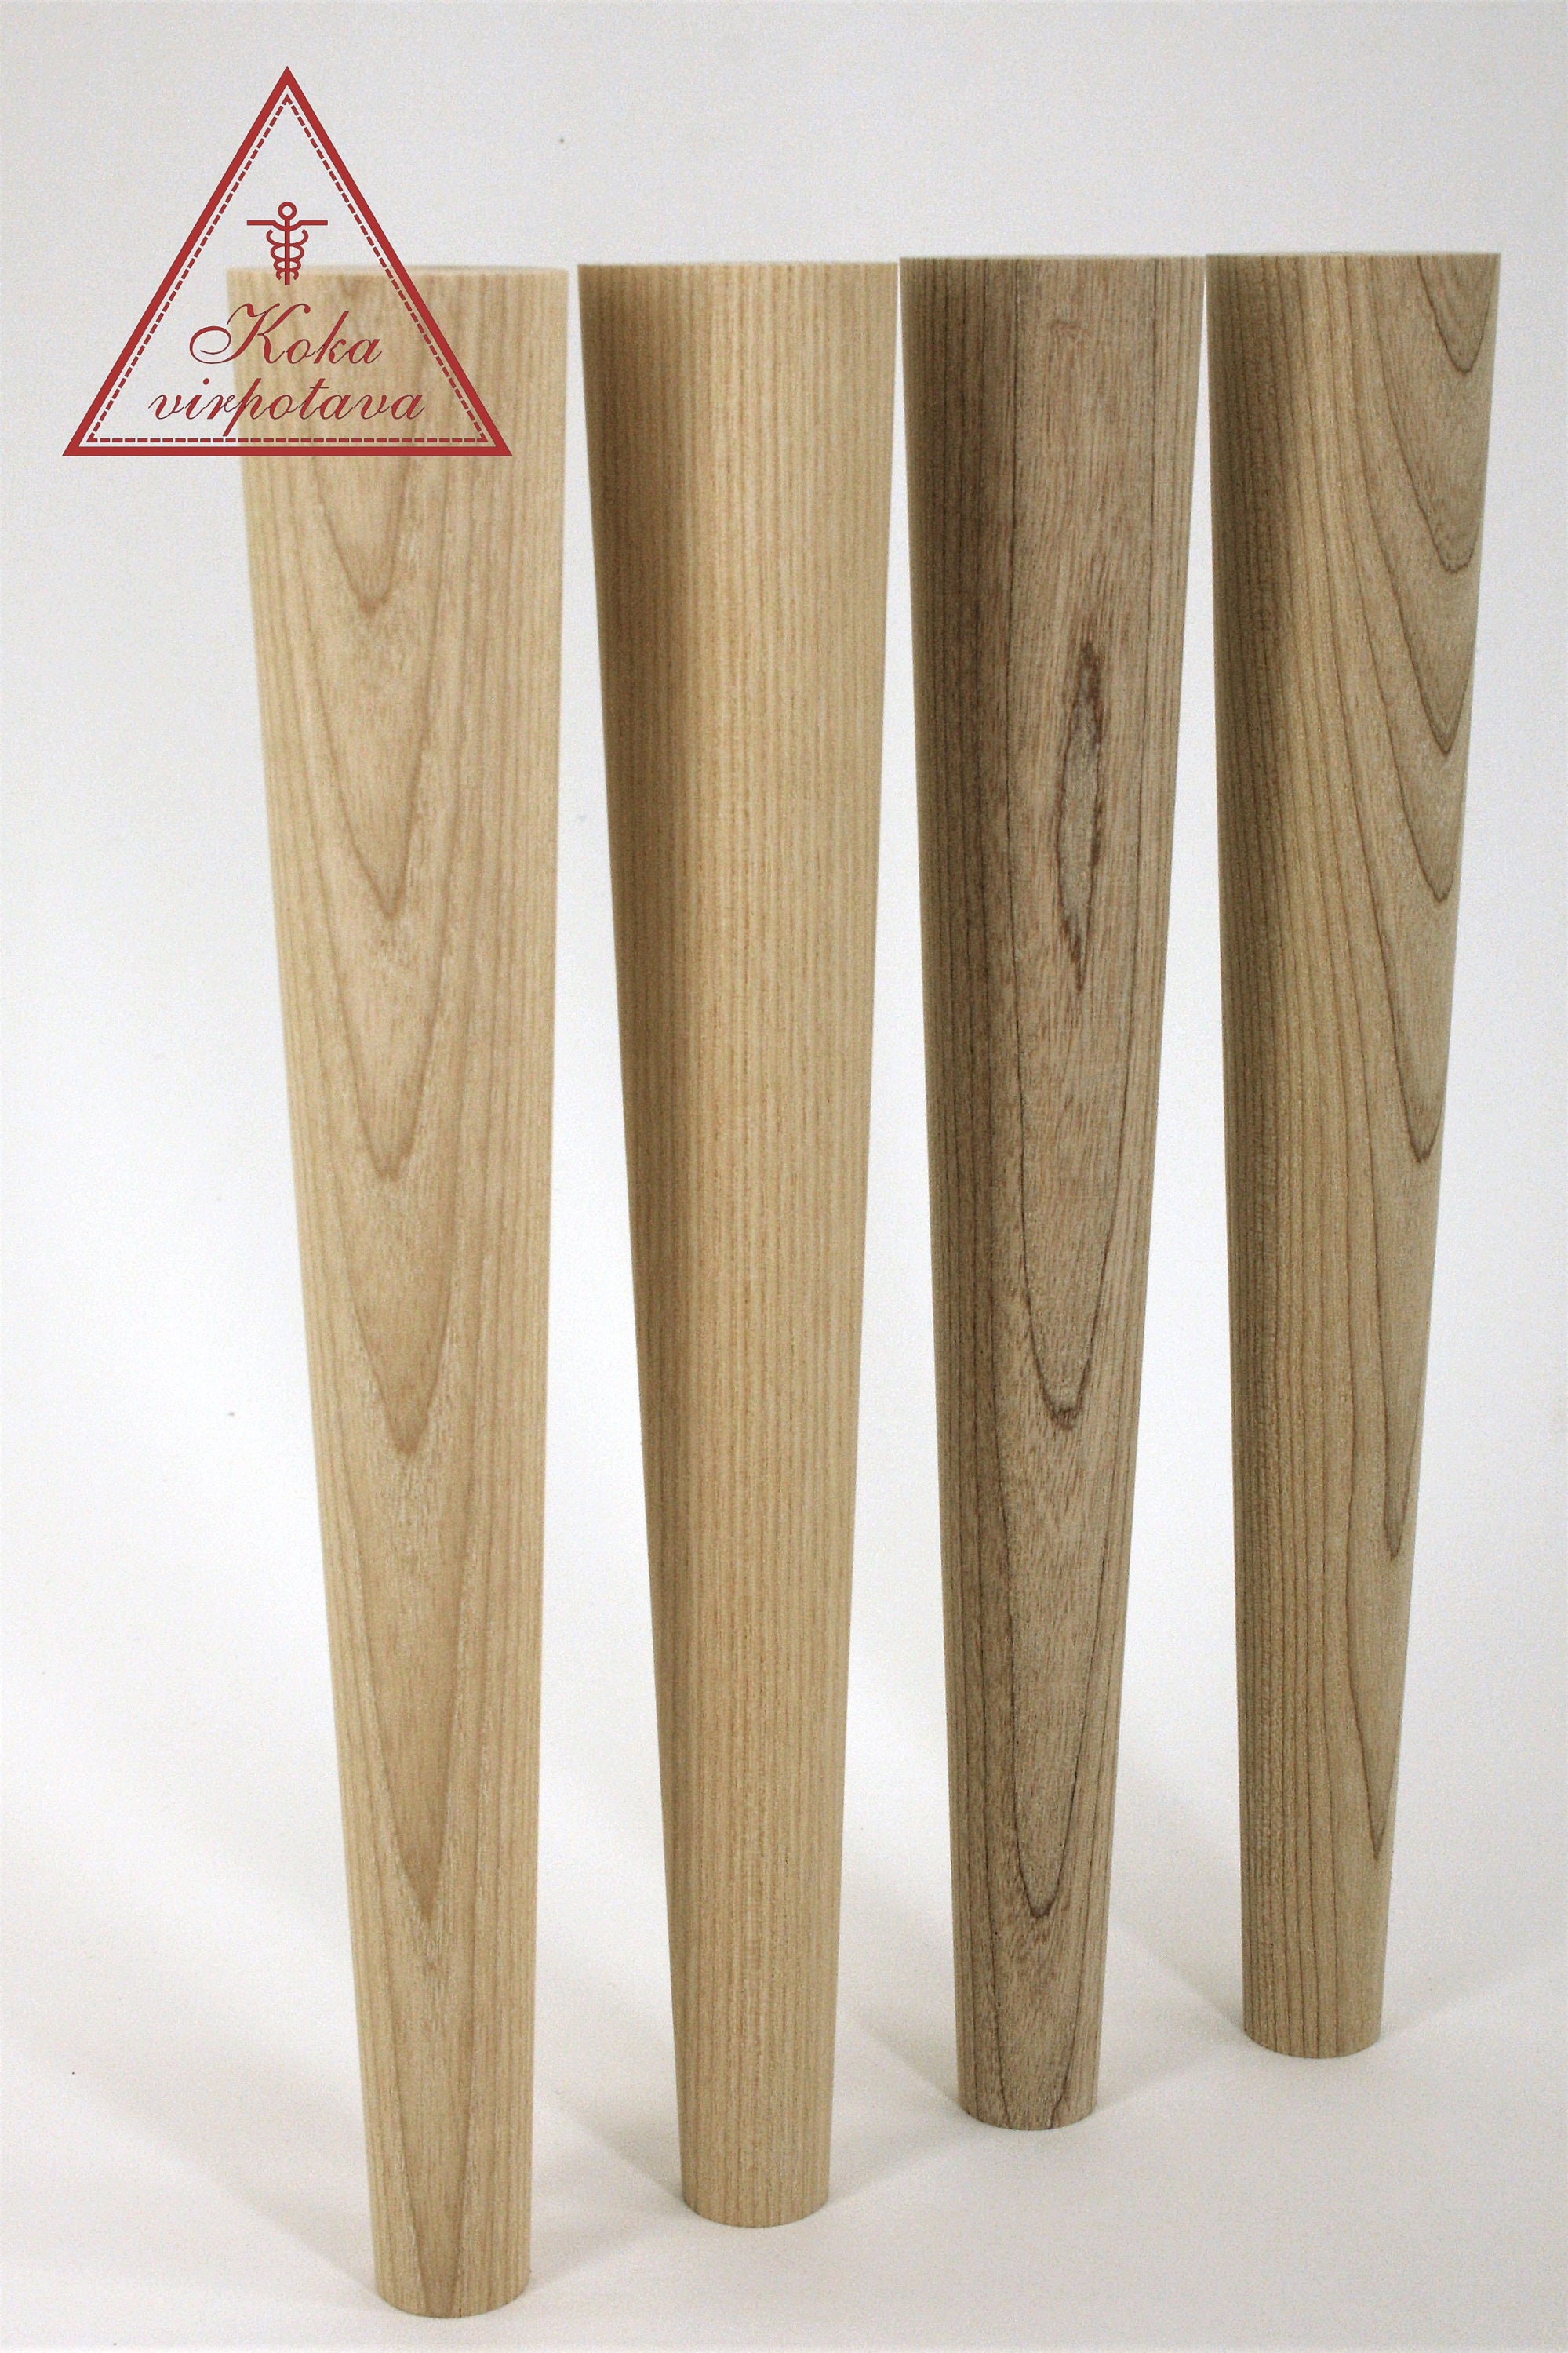 Patas de madera para muebles – 4 uds - XPATAS